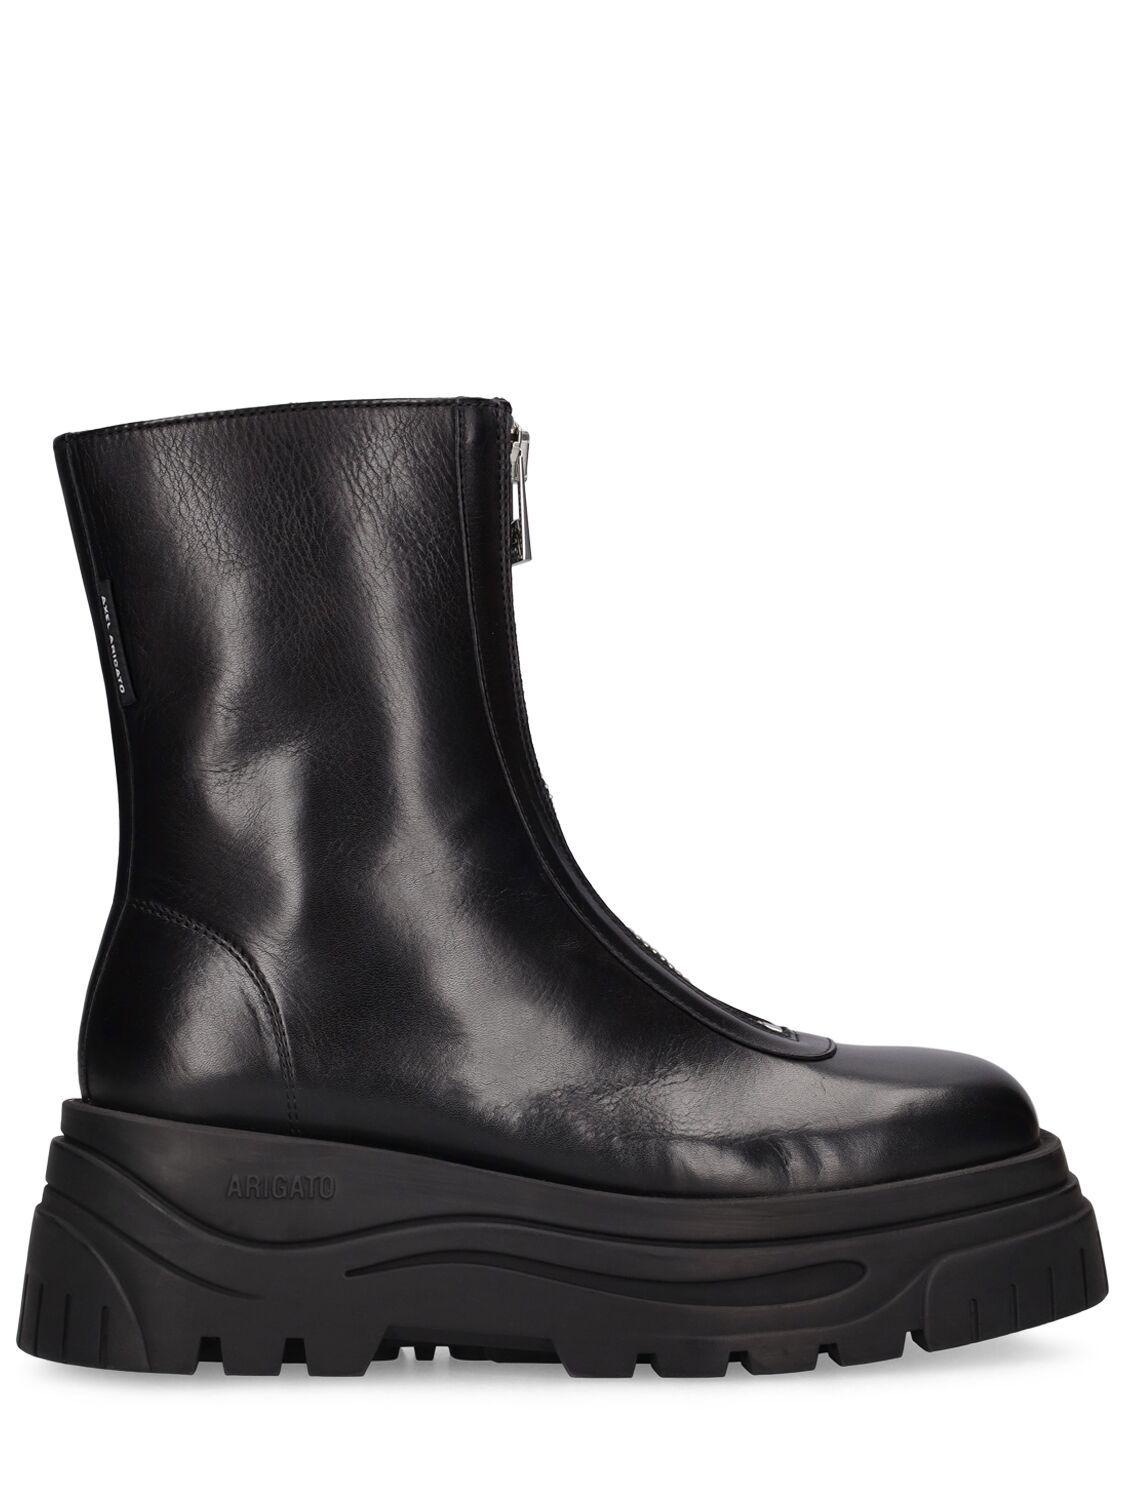 Axel Arigato Blyde Zip Boots in Black | Lyst